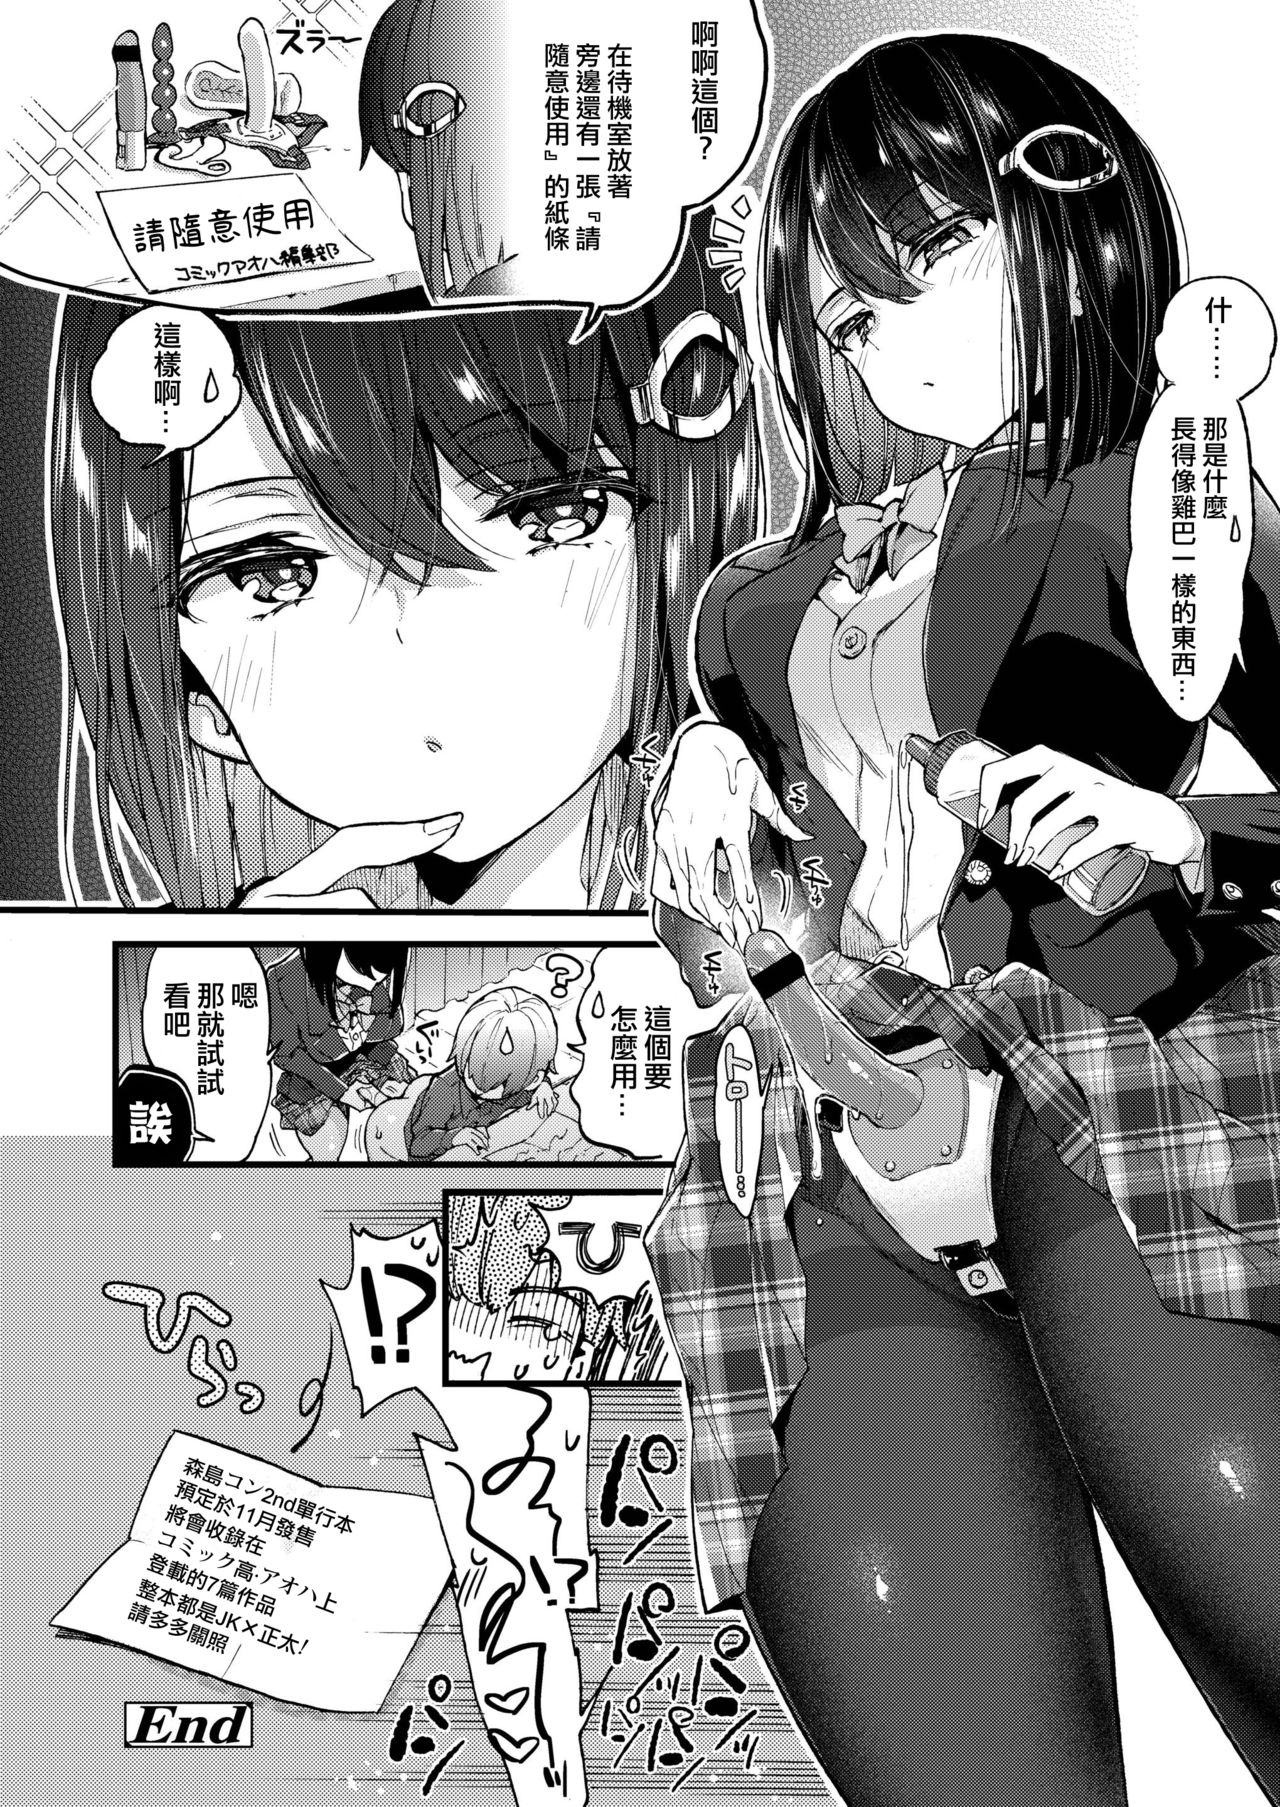 2083918 manga